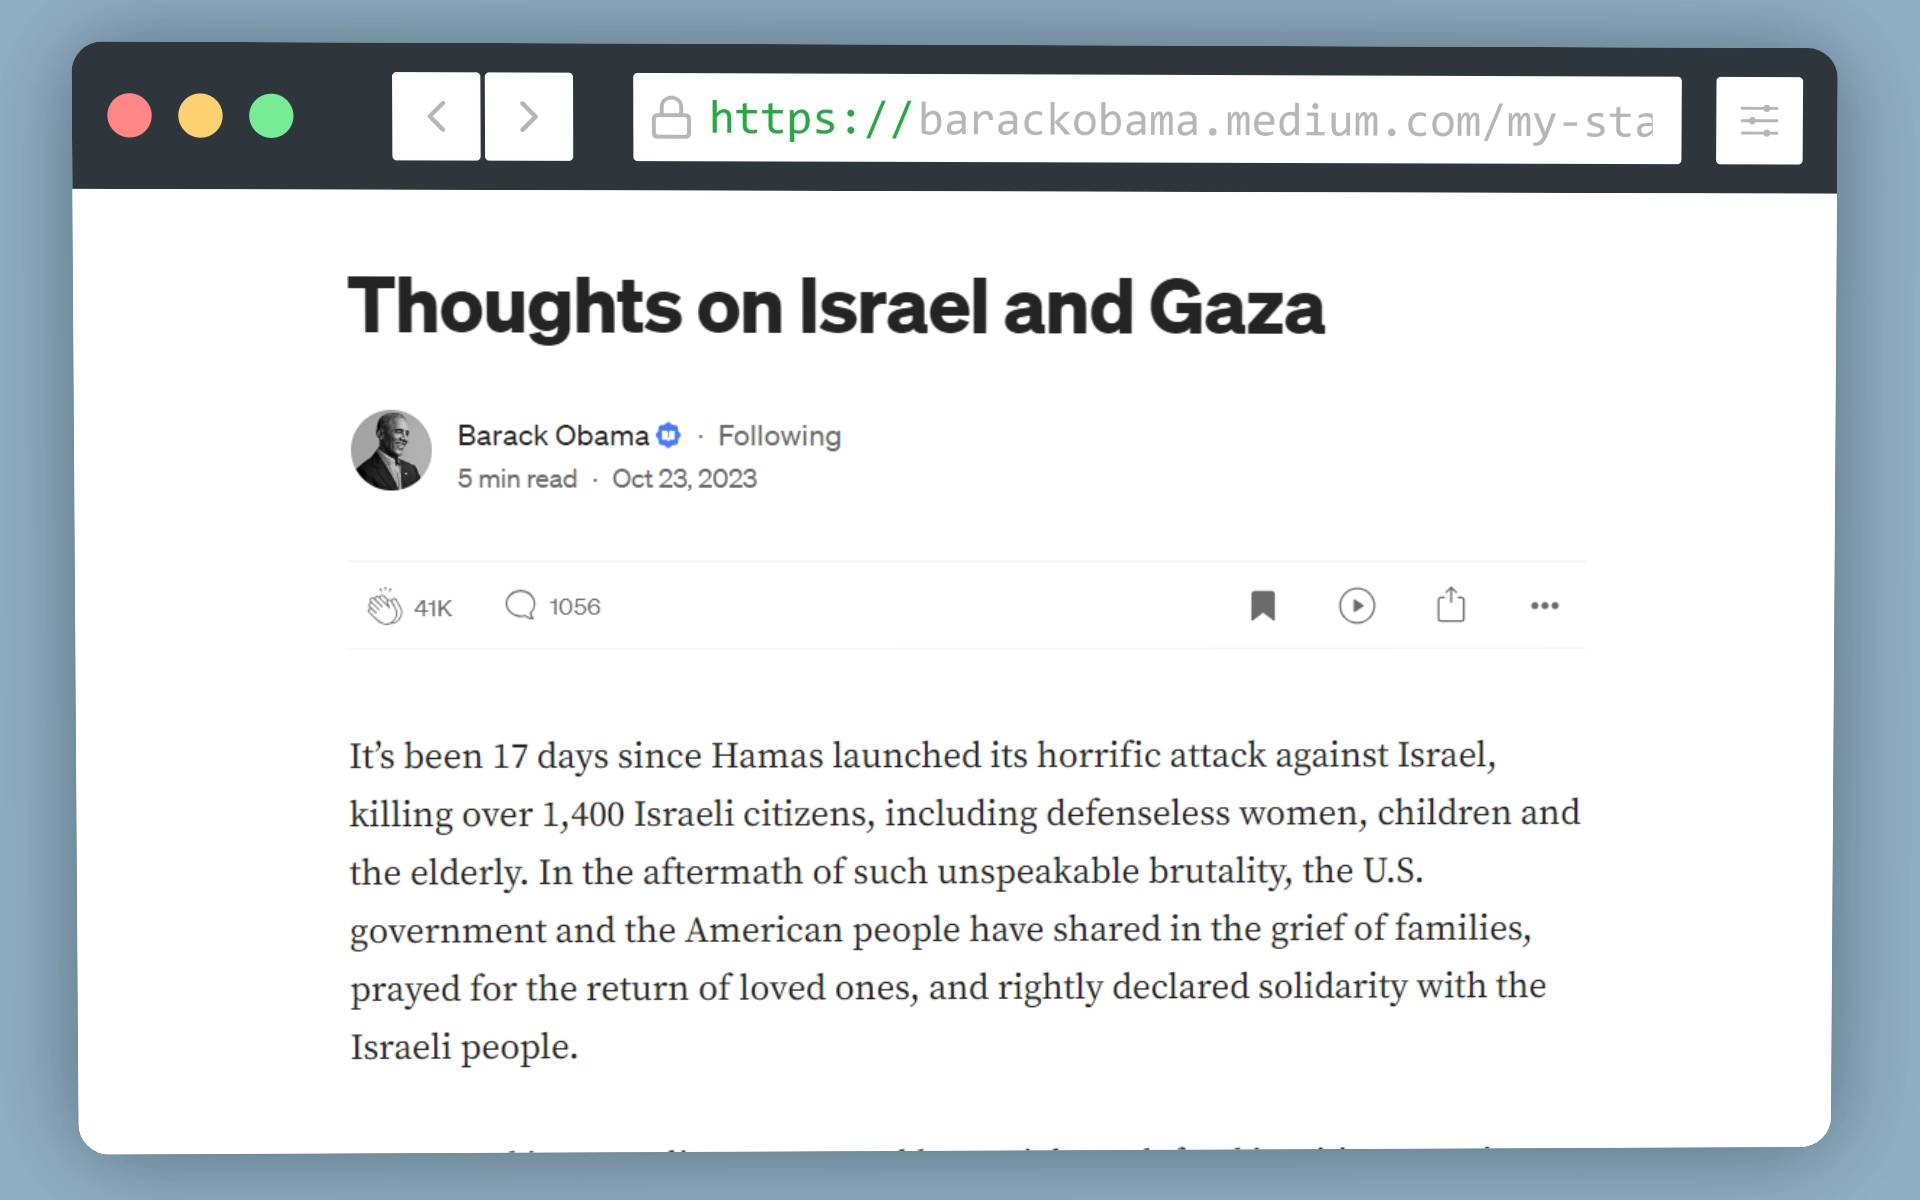 Barack Obama reflexiona sobre el conflicto entre Israel y Gaza.